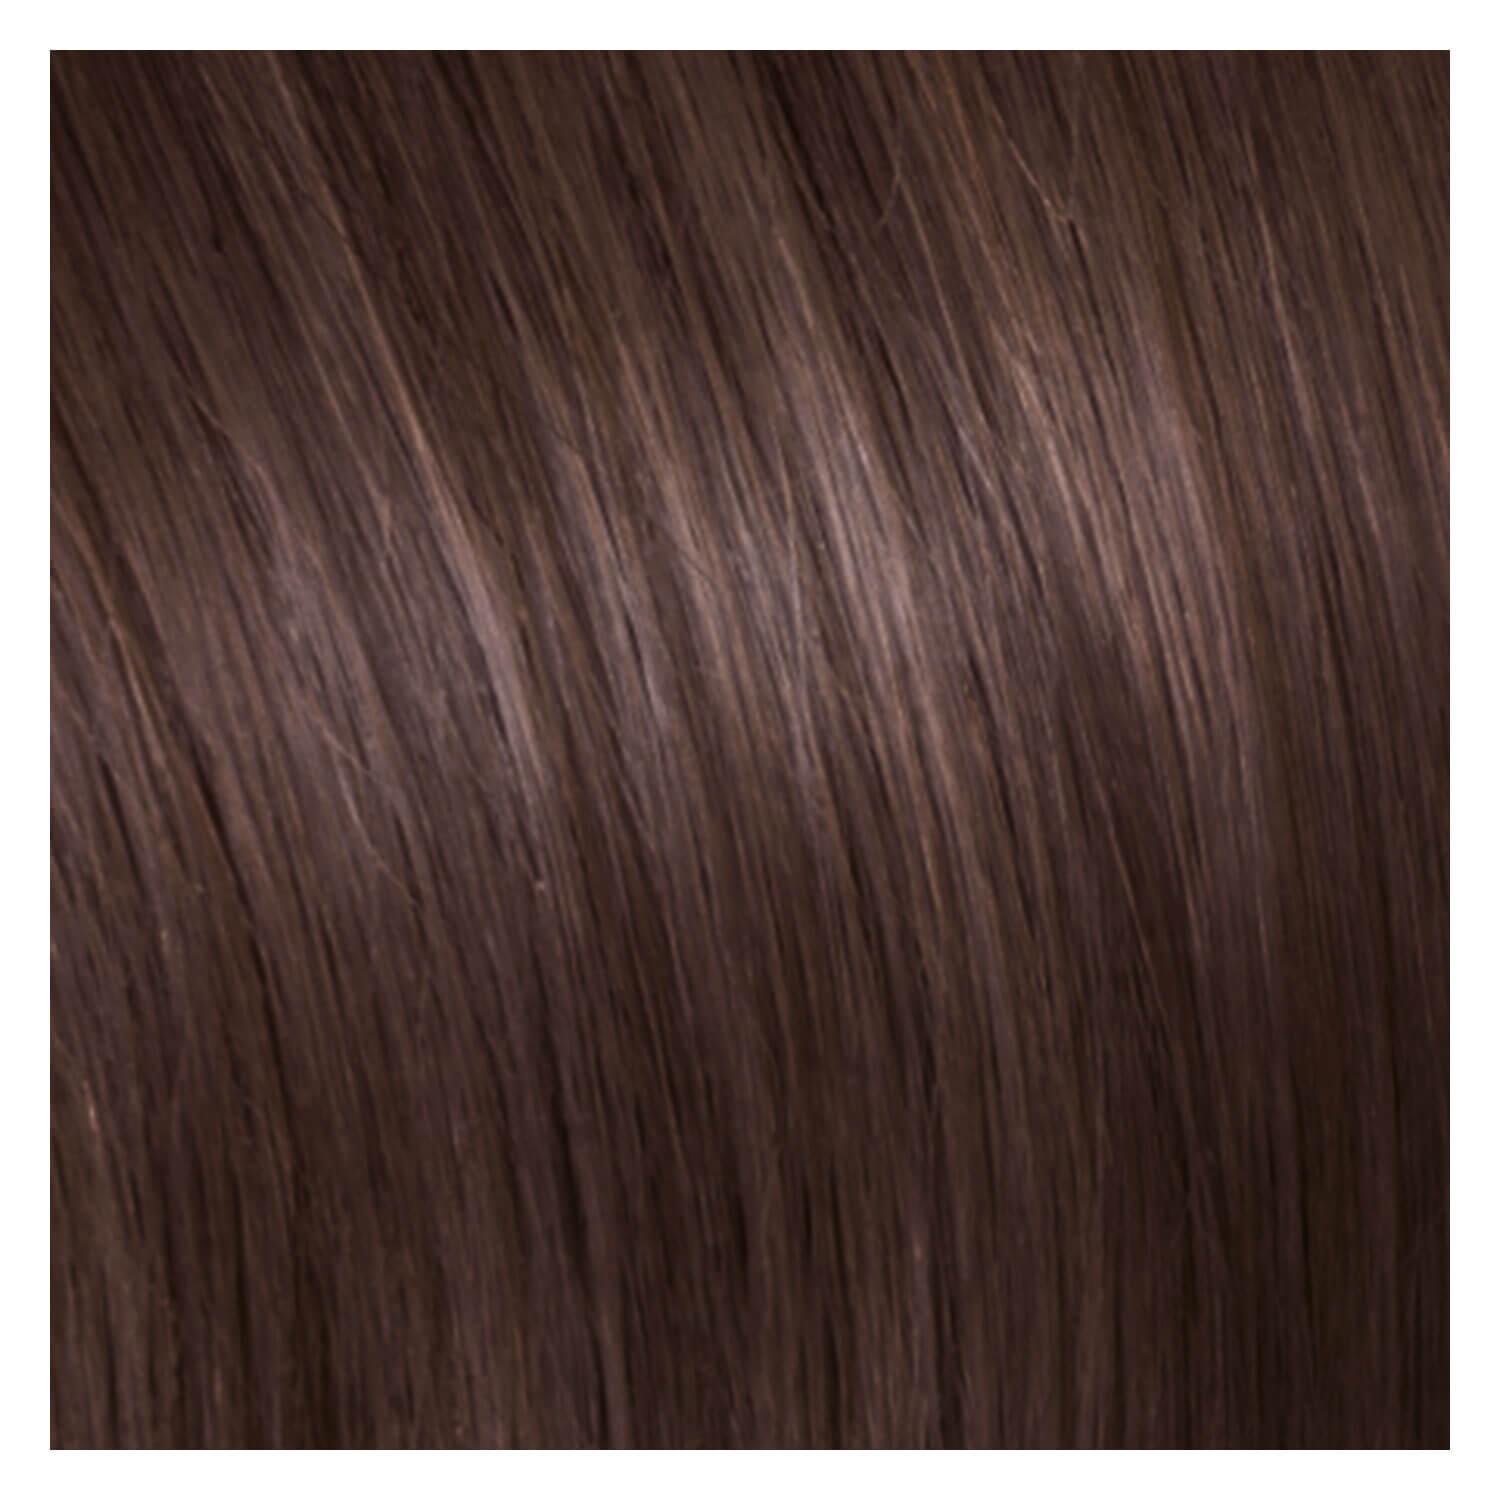 SHE Bonding-System Hair Extensions Straight - 8 Dunkelblond 65/70cm